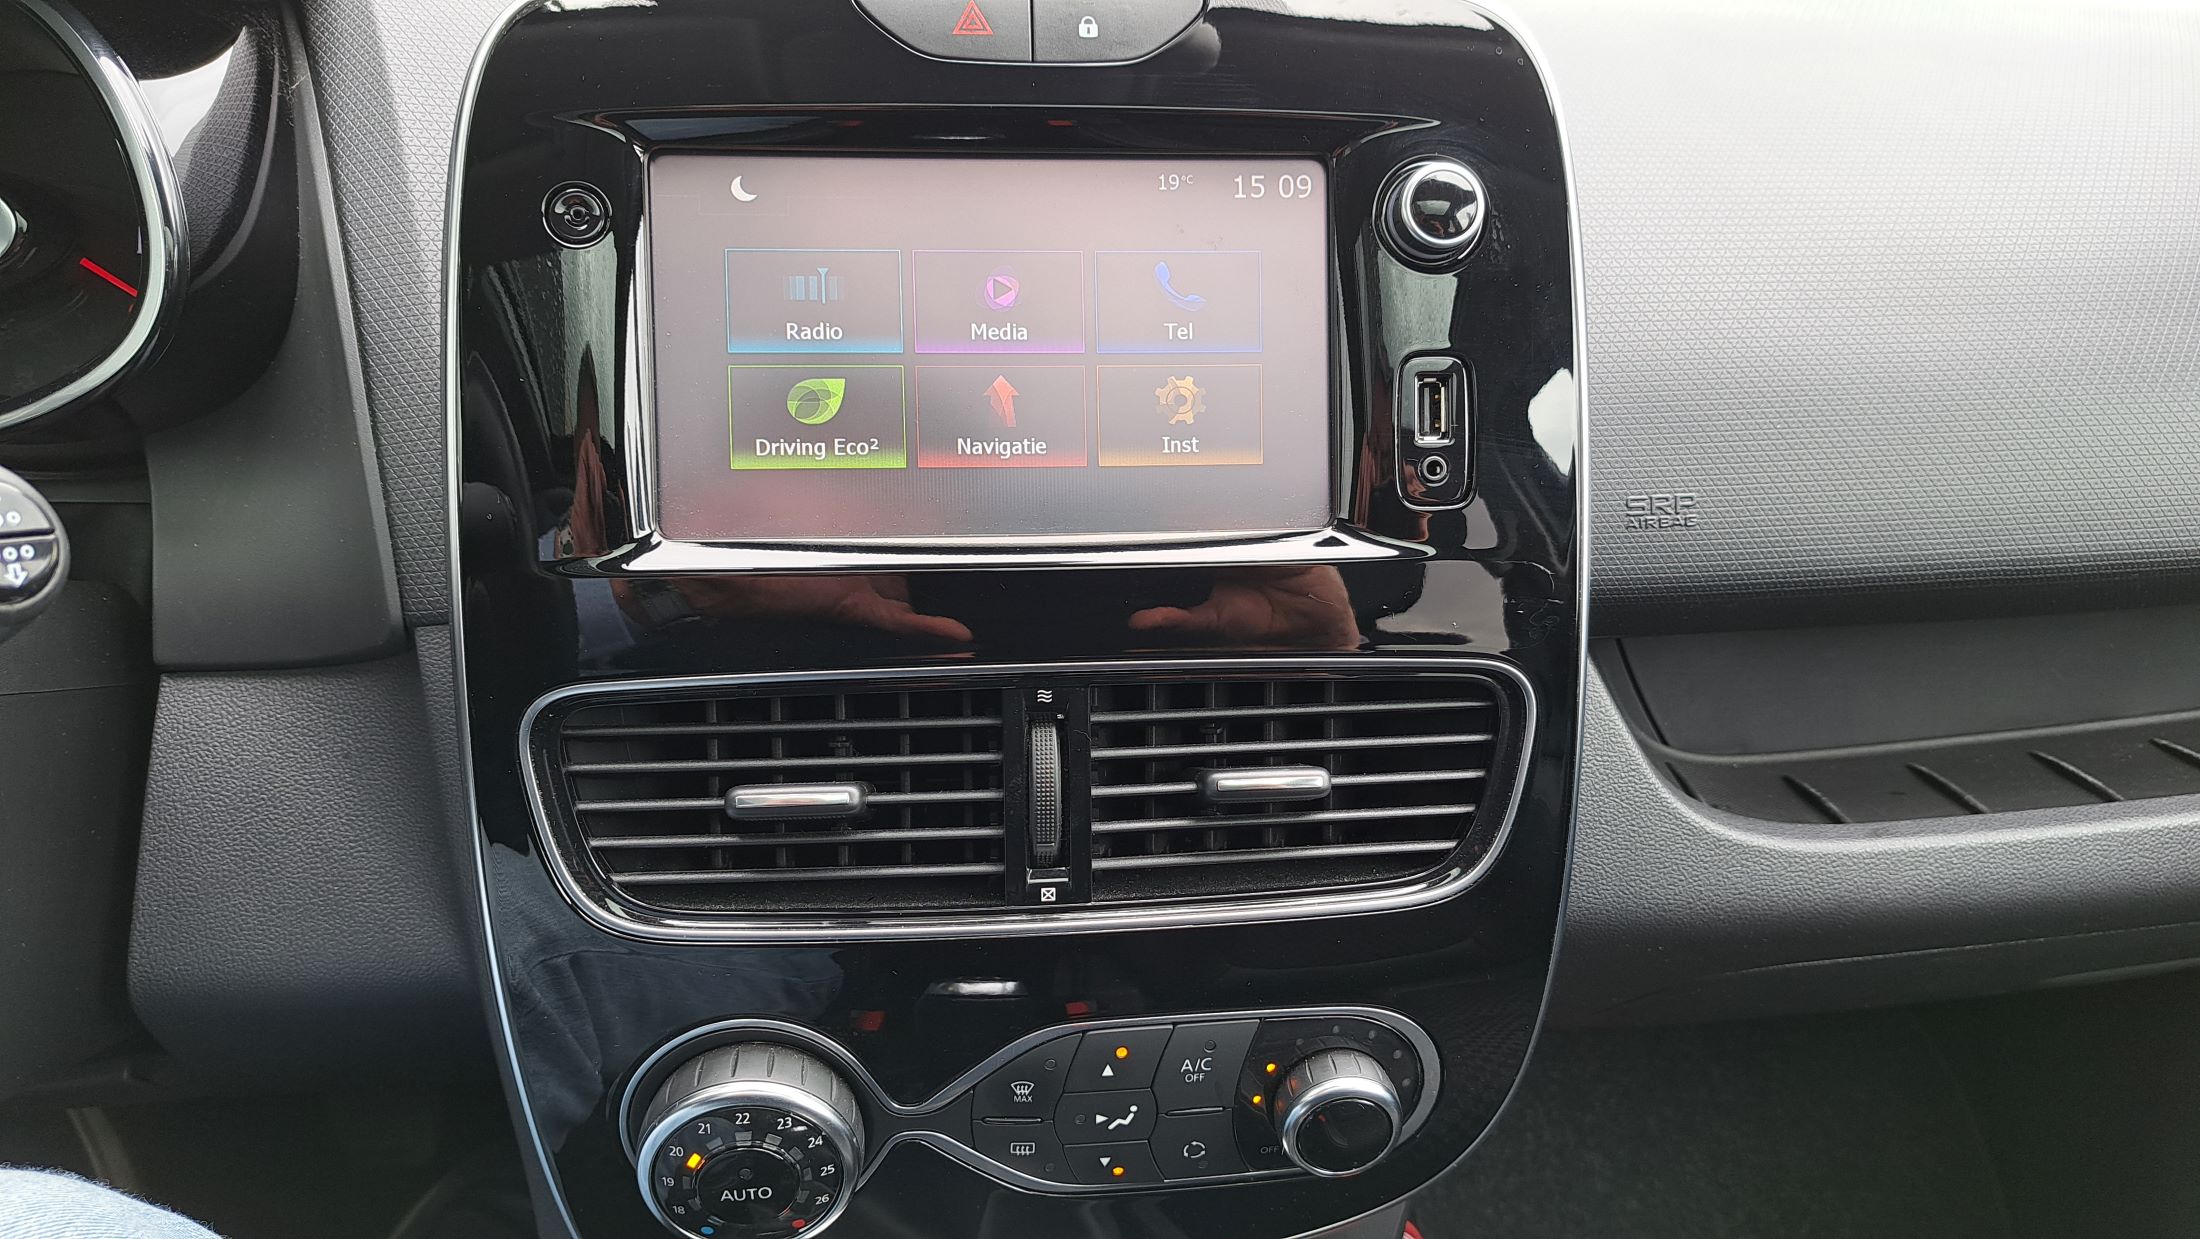 Renault Clio Intens TCe 90 Grand-Tour, GPS, camera, sensoren V+A, panoramisch dak